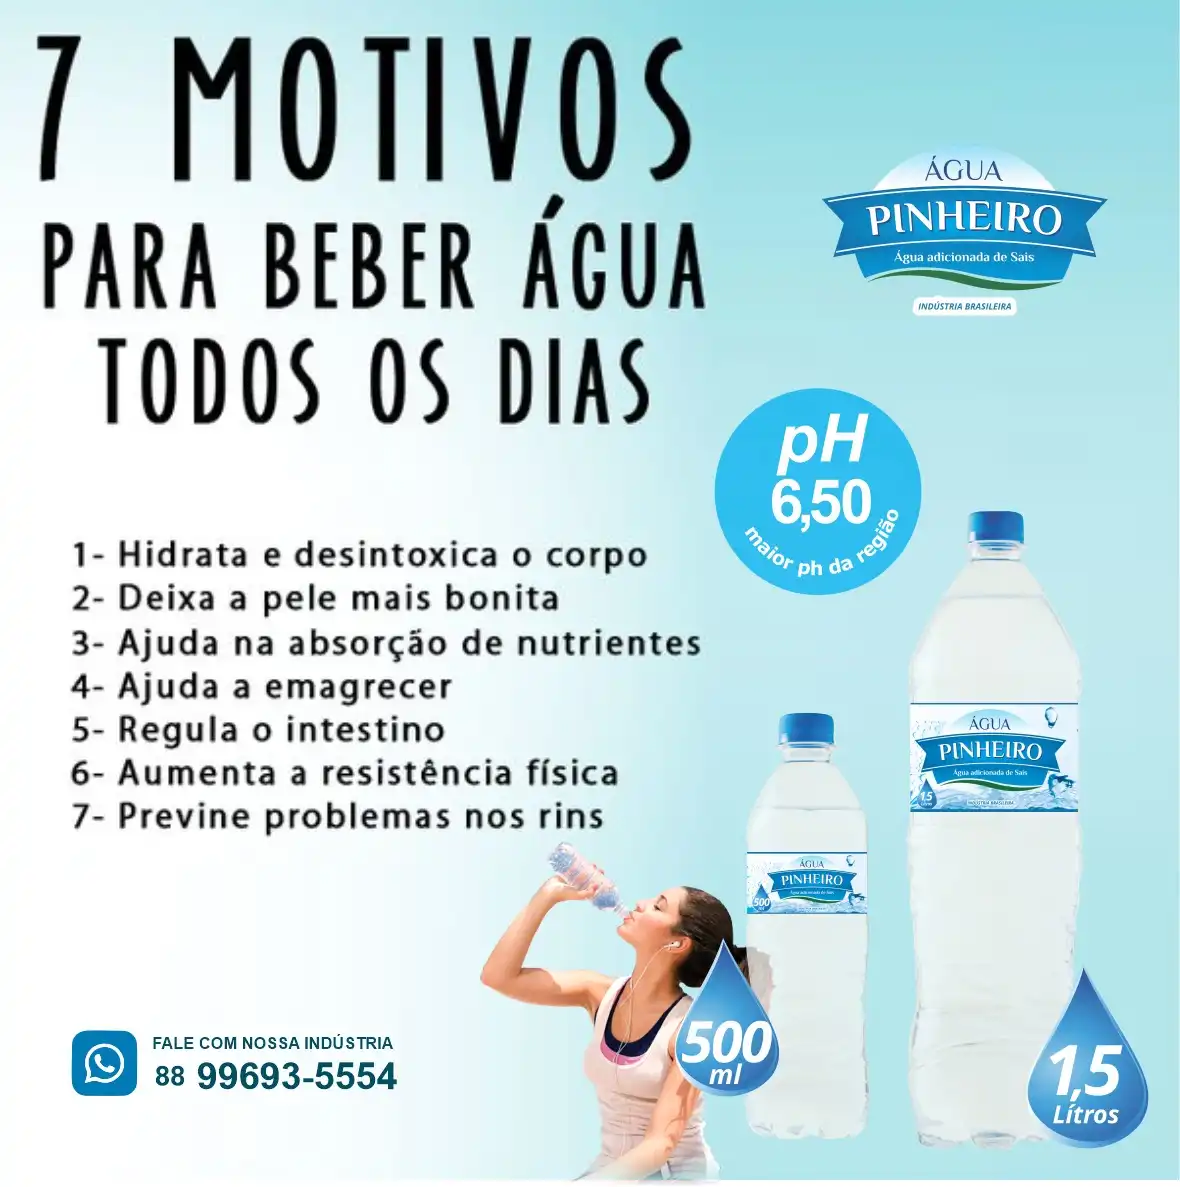 
Propaganda 7 Motivos para Beber Água todos os dias



